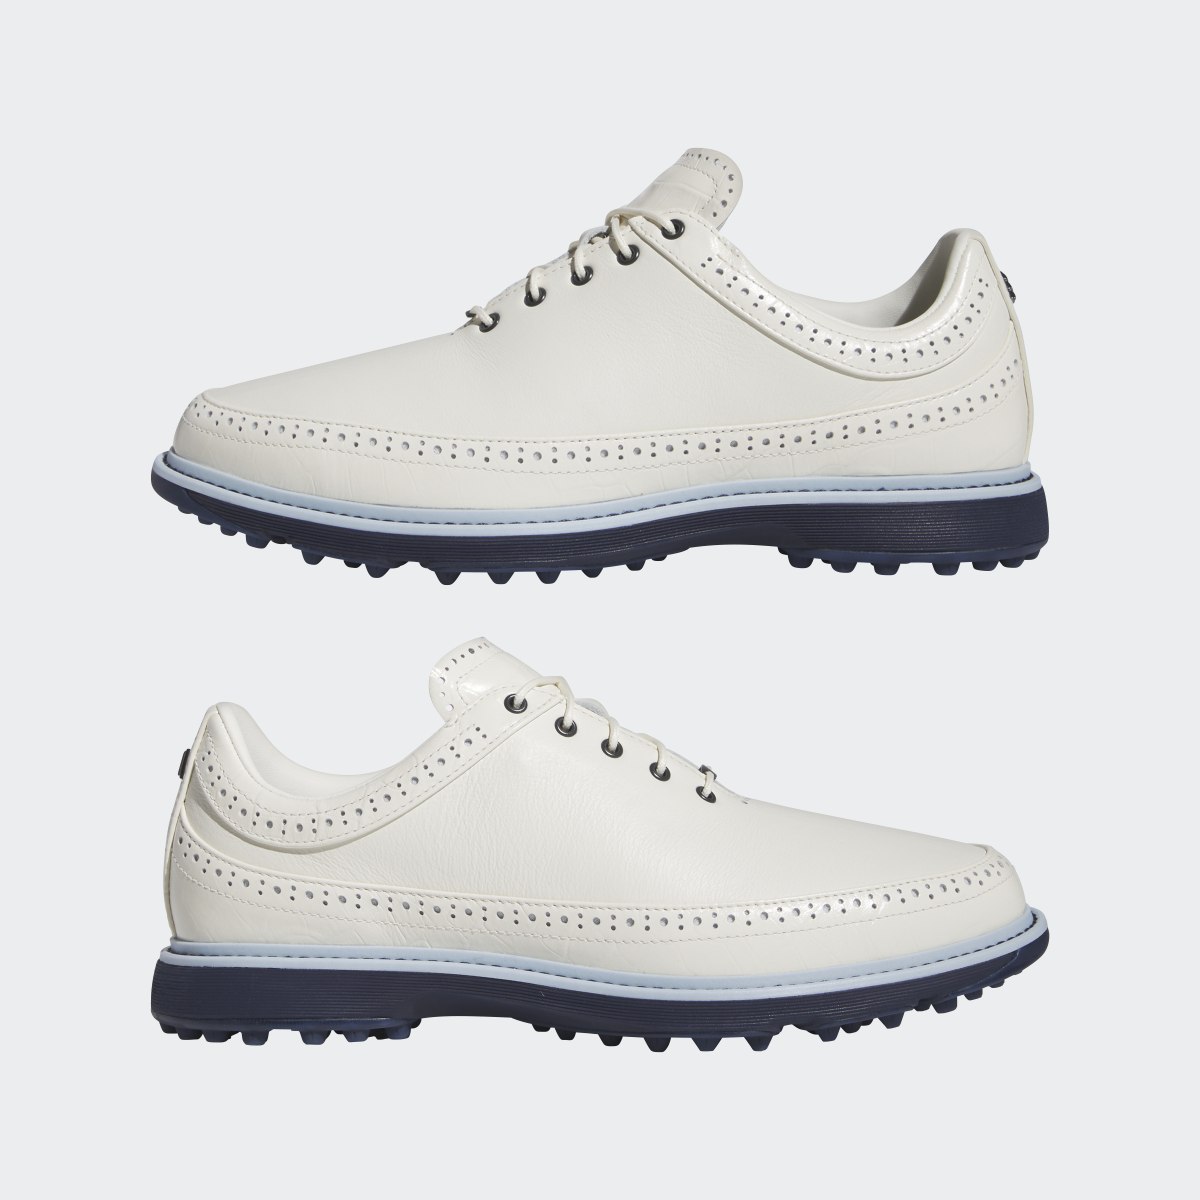 Adidas Modern Classic 80 Spikeless Golf Shoes. 13